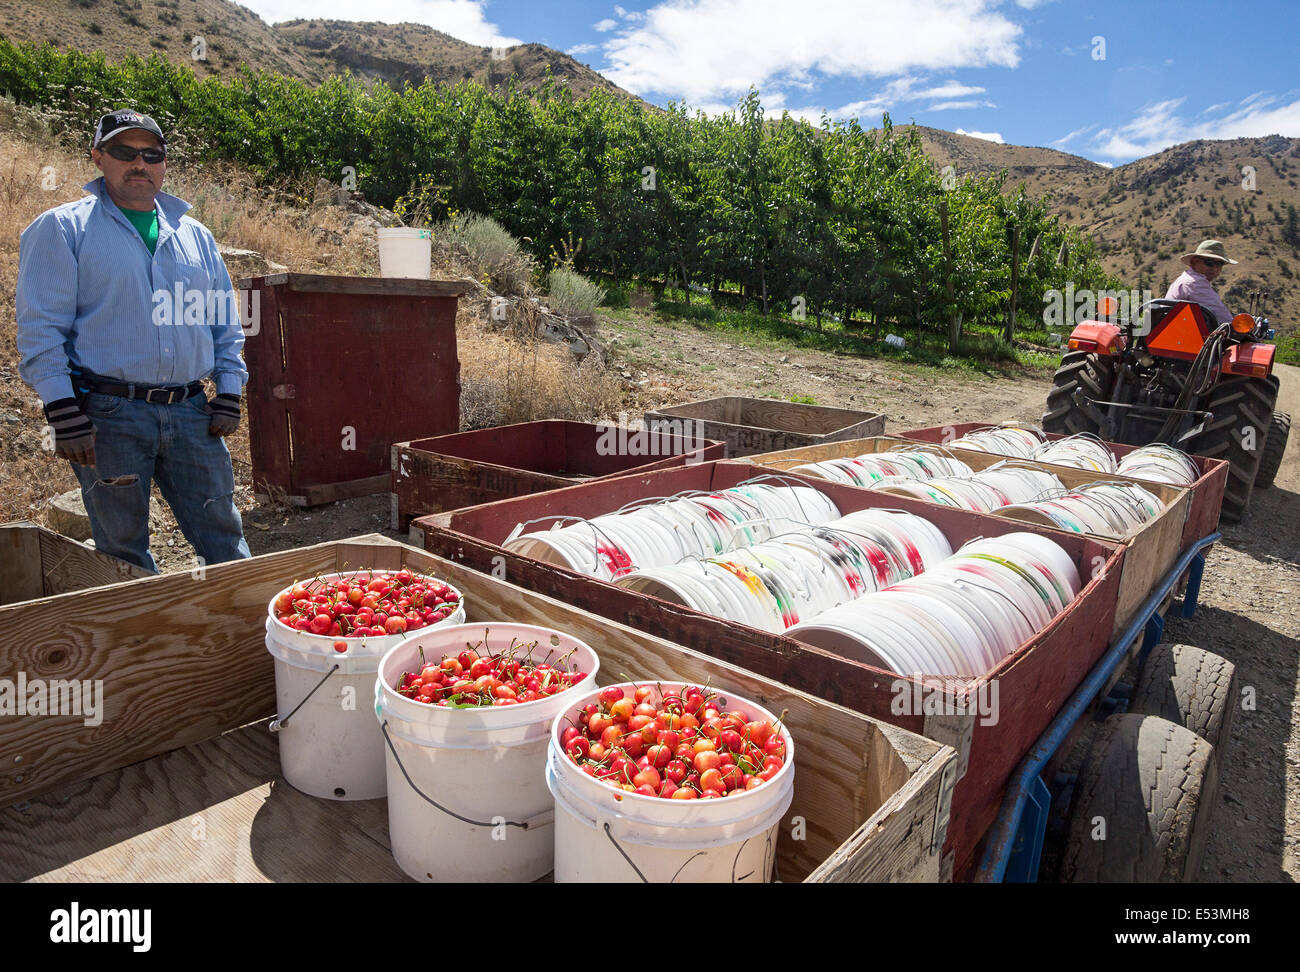 Frisch gepflückt Orondo Ruby Kirschen in Eimern auf G & C Farmen außerhalb Wenatchee, WA, USA. Stockfoto